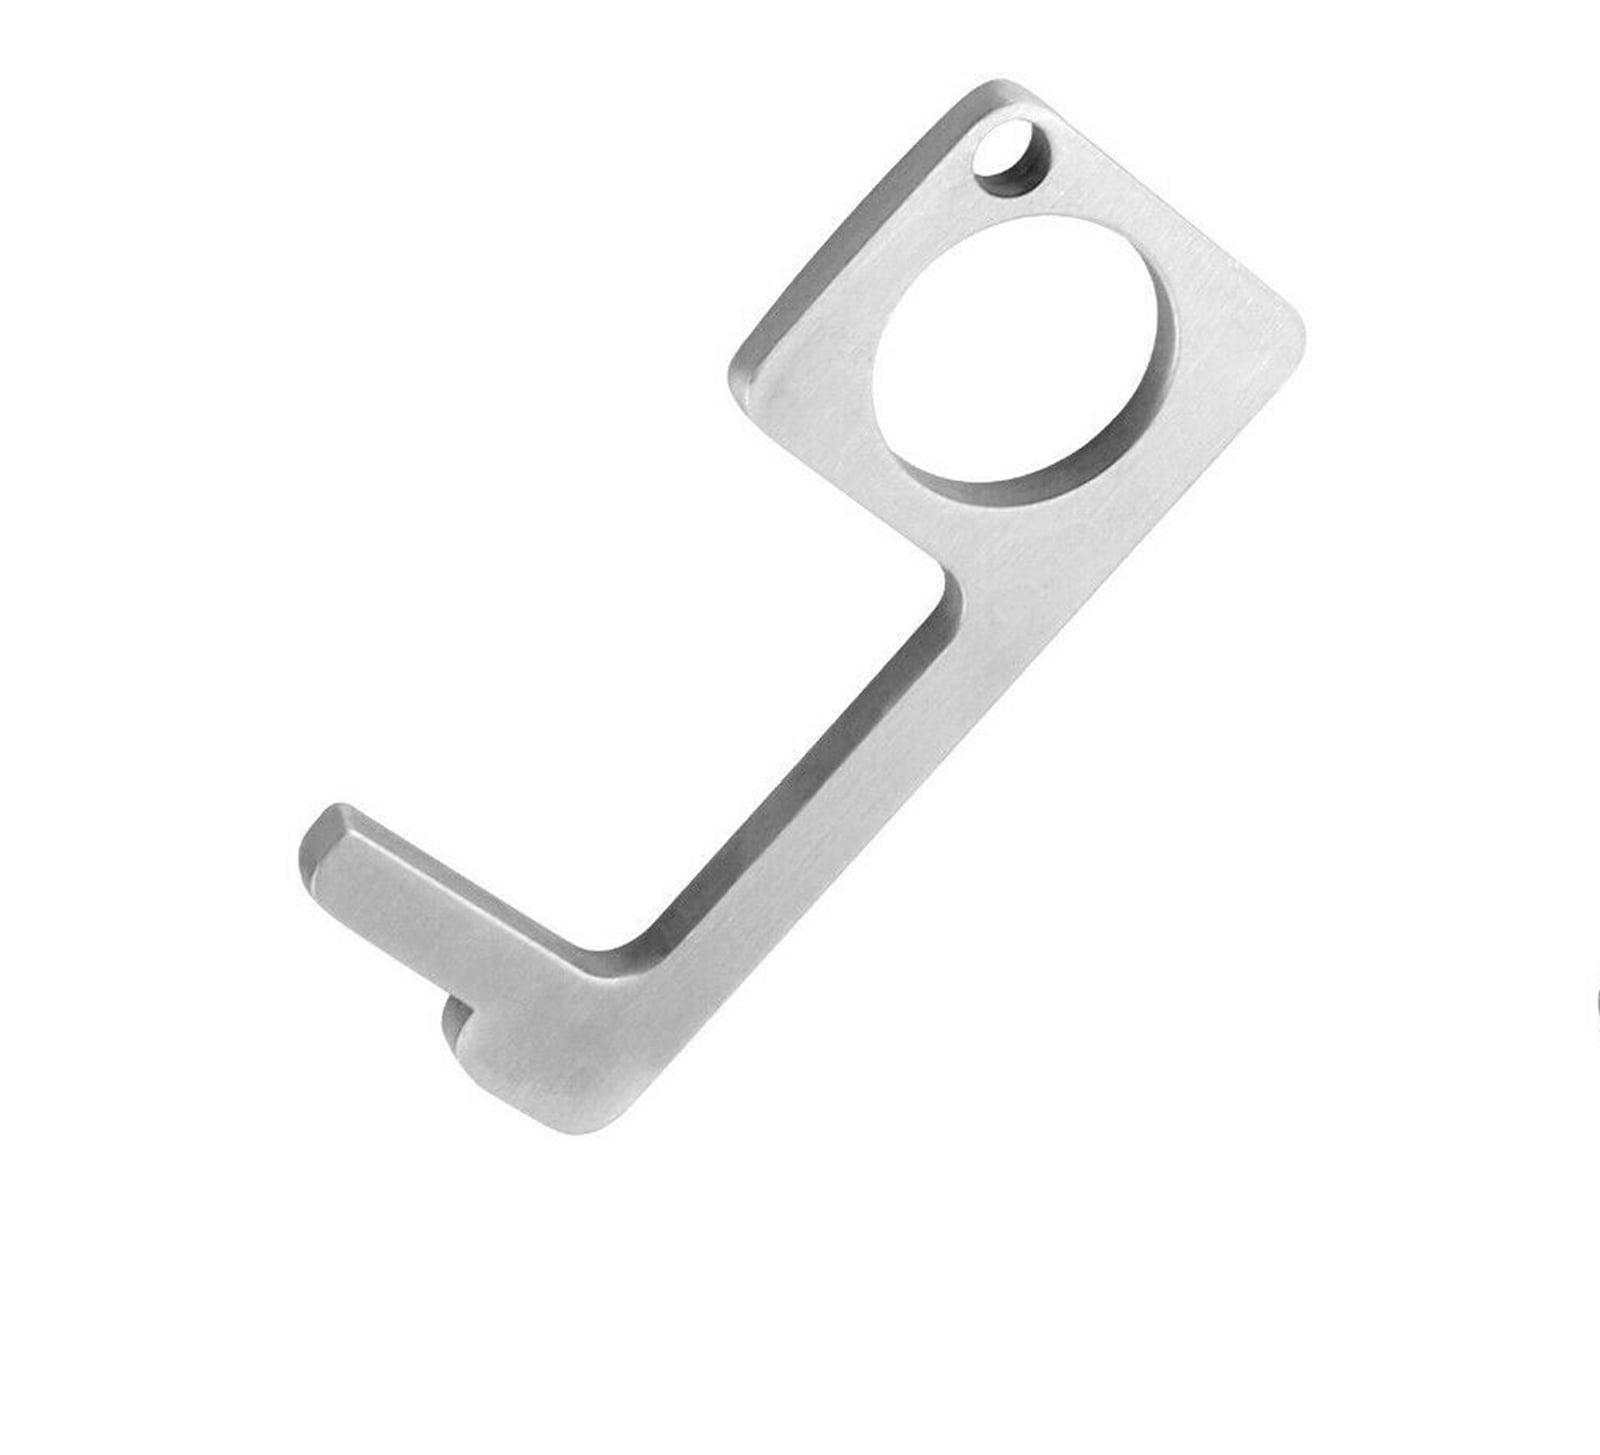 Portable Elevator Button Contactless Door Opener Handle Keychain Grip Hook Tool 